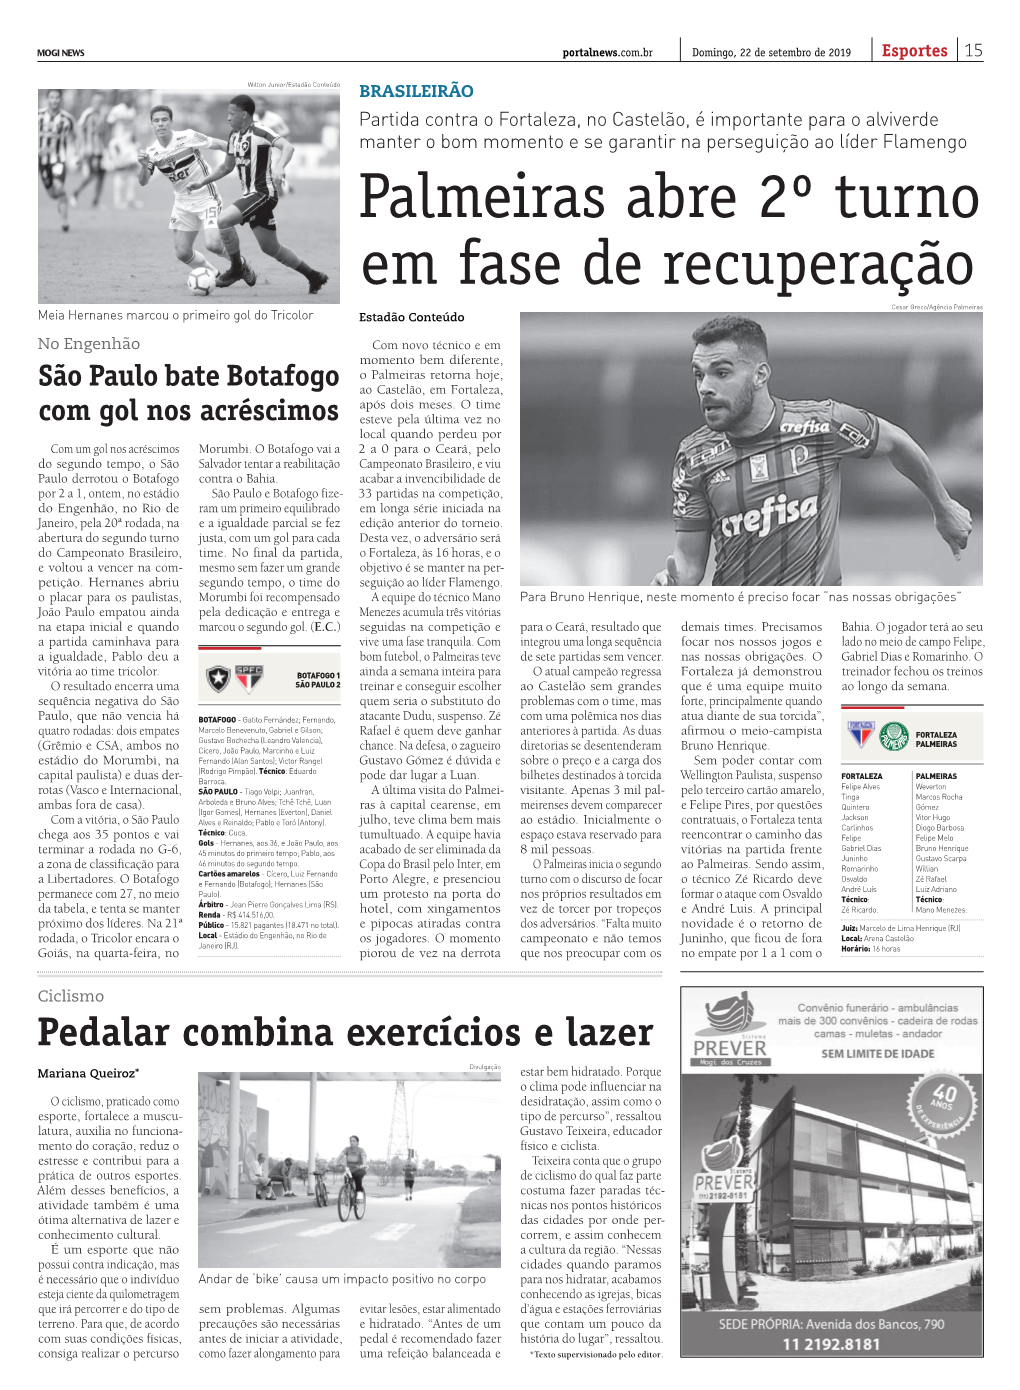 Palmeiras Abre 2º Turno Em Fase De Recuperação Cesar Greco/Agência Palmeiras Meia Hernanes Marcou O Primeiro Gol Do Tricolor Estadão Conteúdo